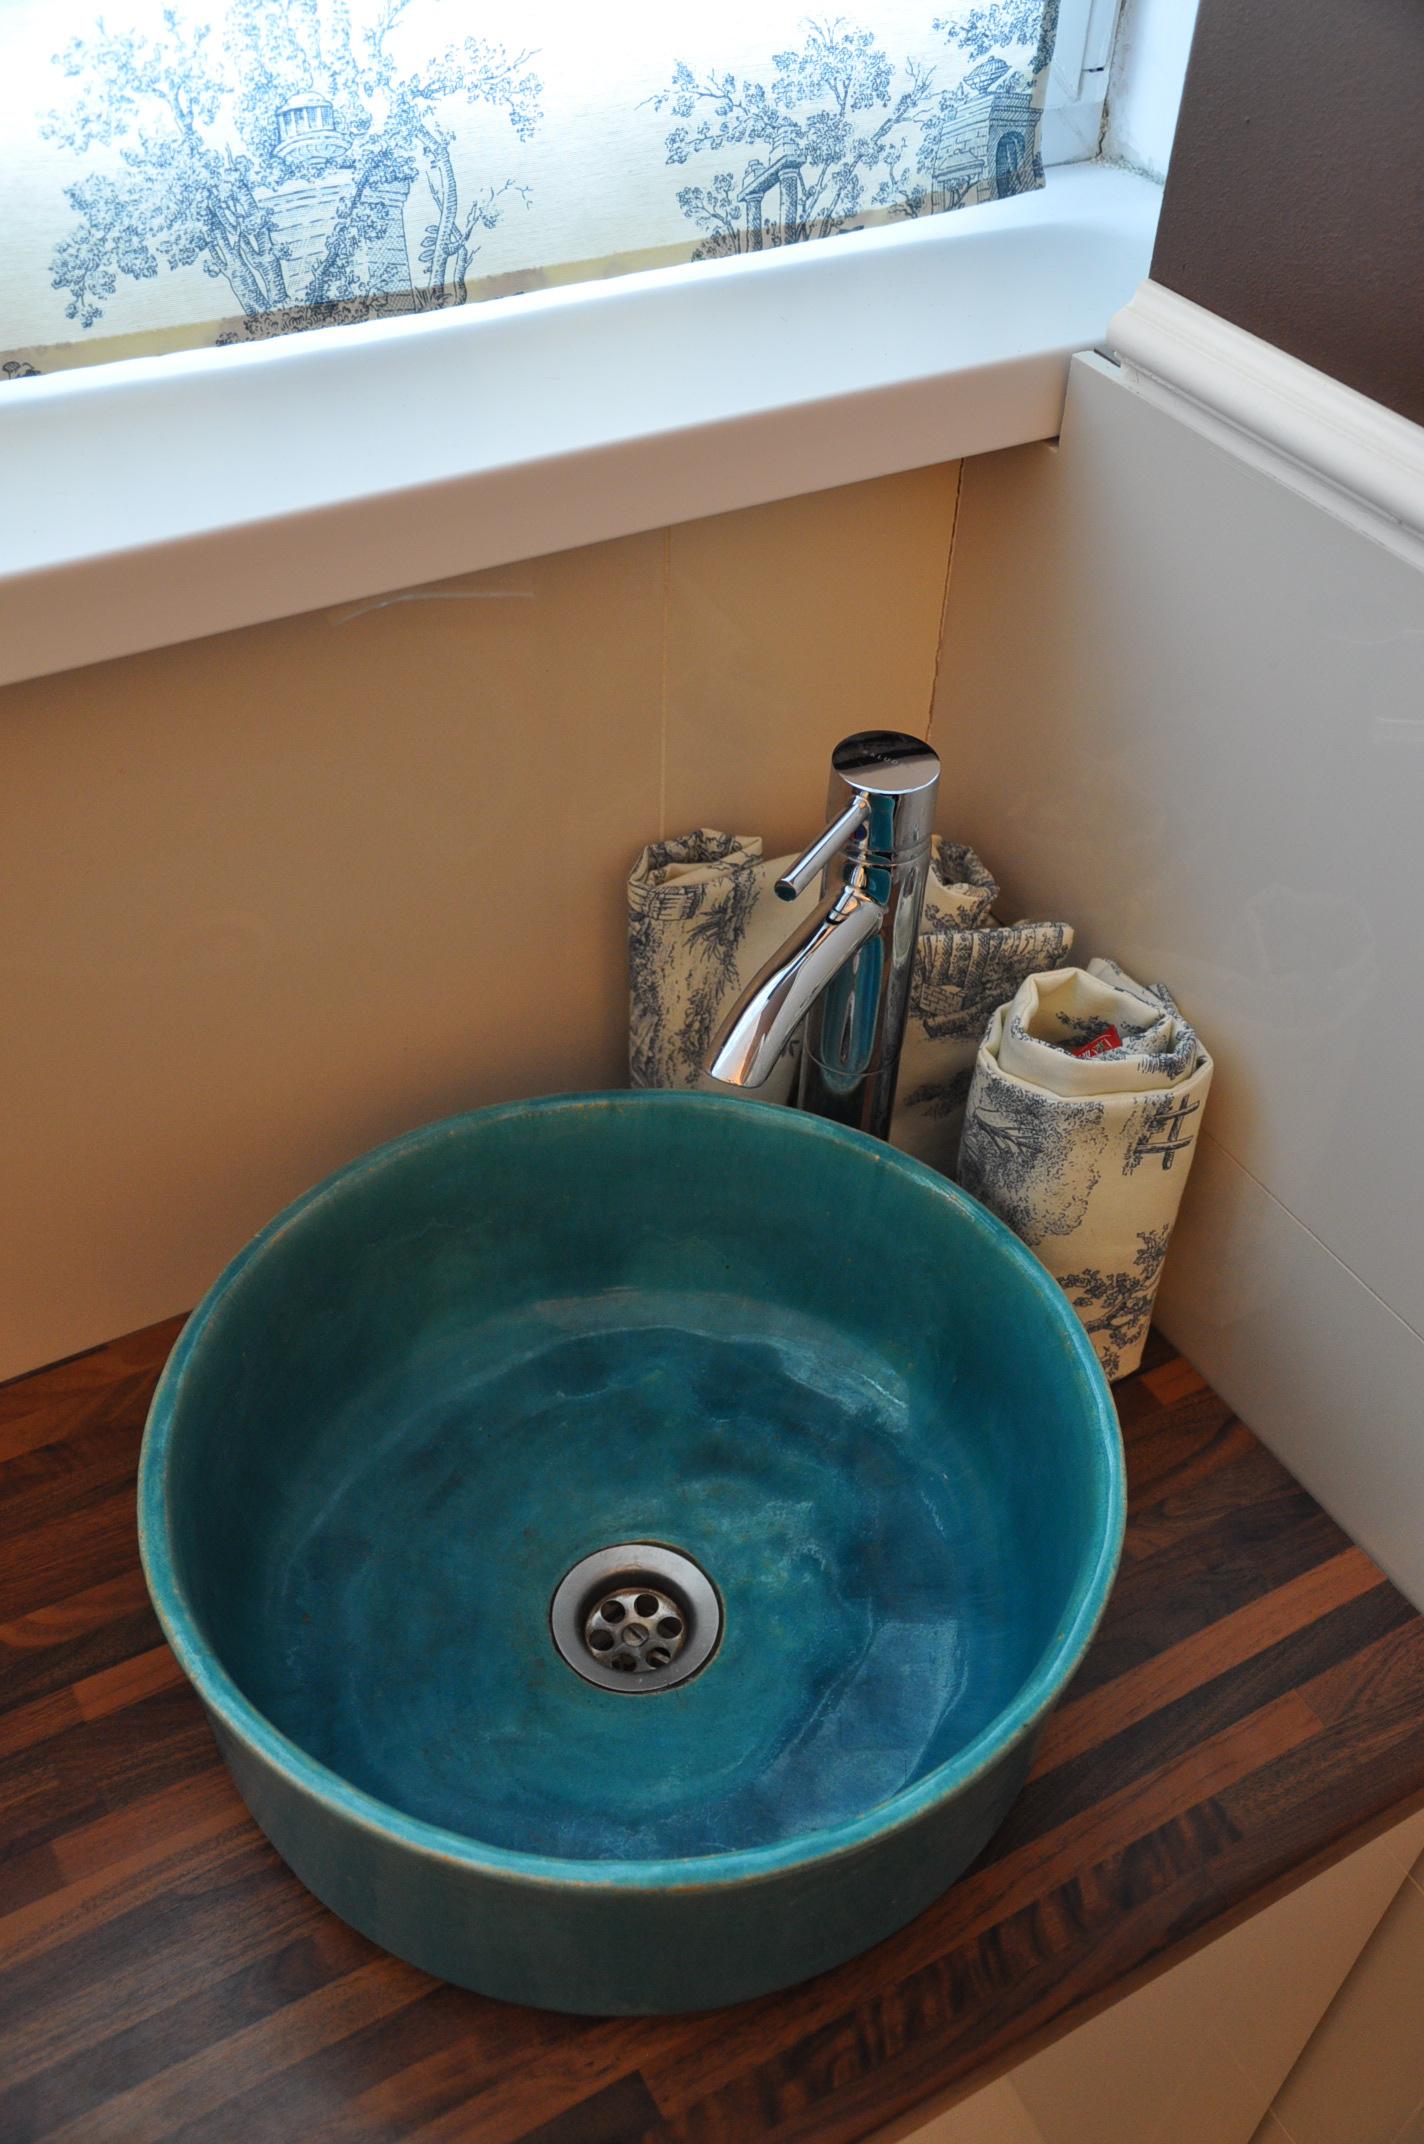 Blumen Waschbecken - Designer Aufsatzwaschbecken #rustikal #vintagewaschbecken #antikesspülbecken ©Florisa